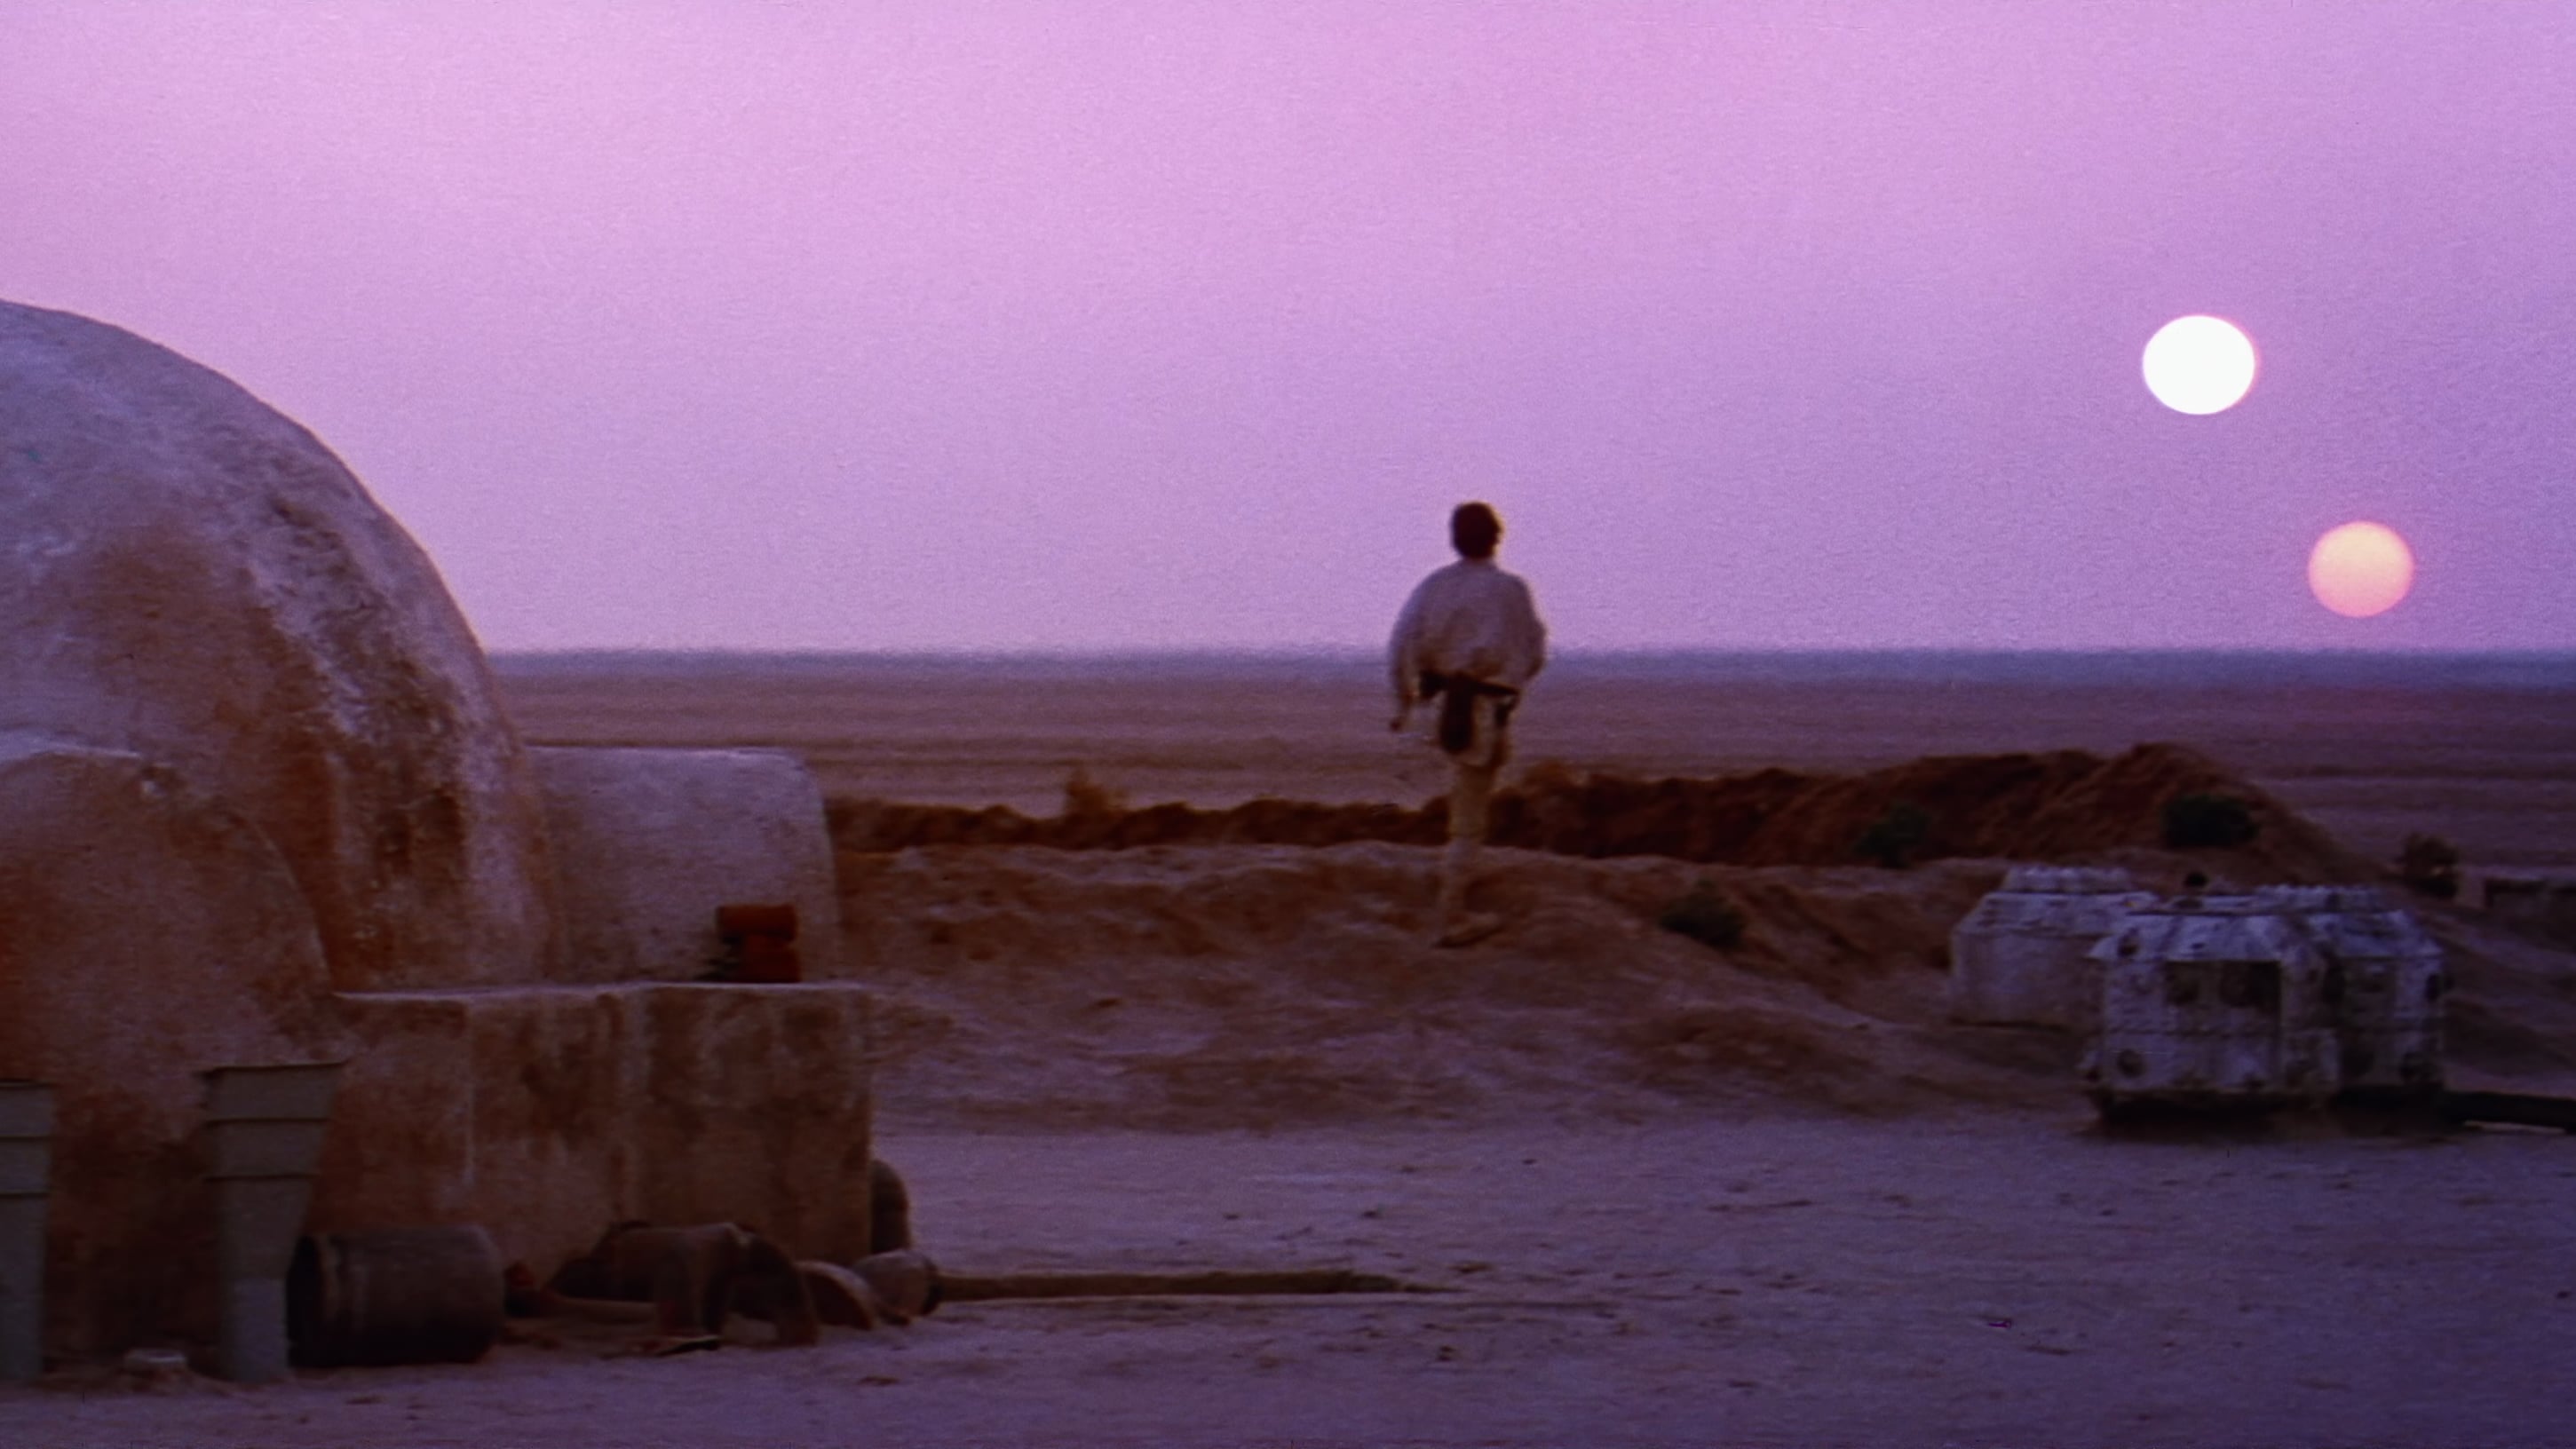 Image du film Star Wars Episode IV : un nouvel espoir csmlfs4wyyugg9bmpmnjd0mqqx8jpg